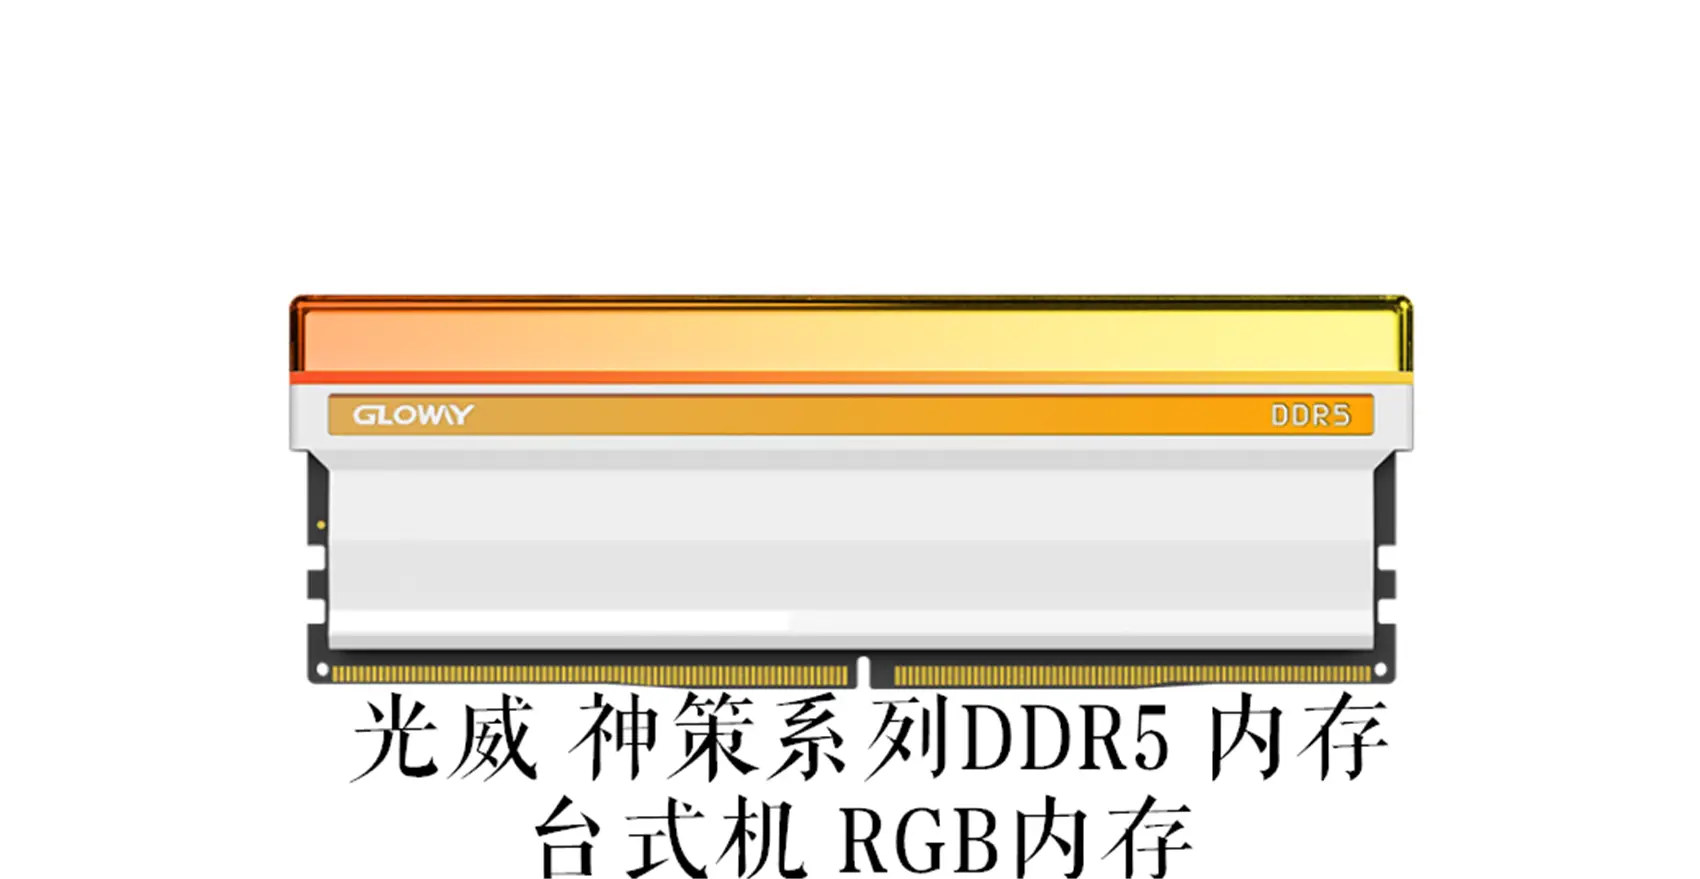 解读DDR3 1333MHz 4GX16型号内存的性能特点及应用场景  第2张